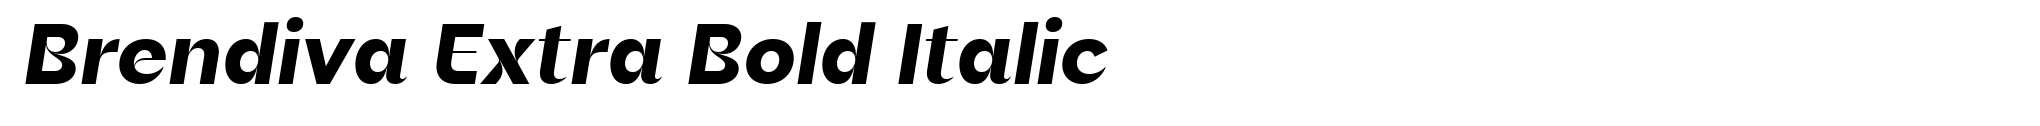 Brendiva Extra Bold Italic image